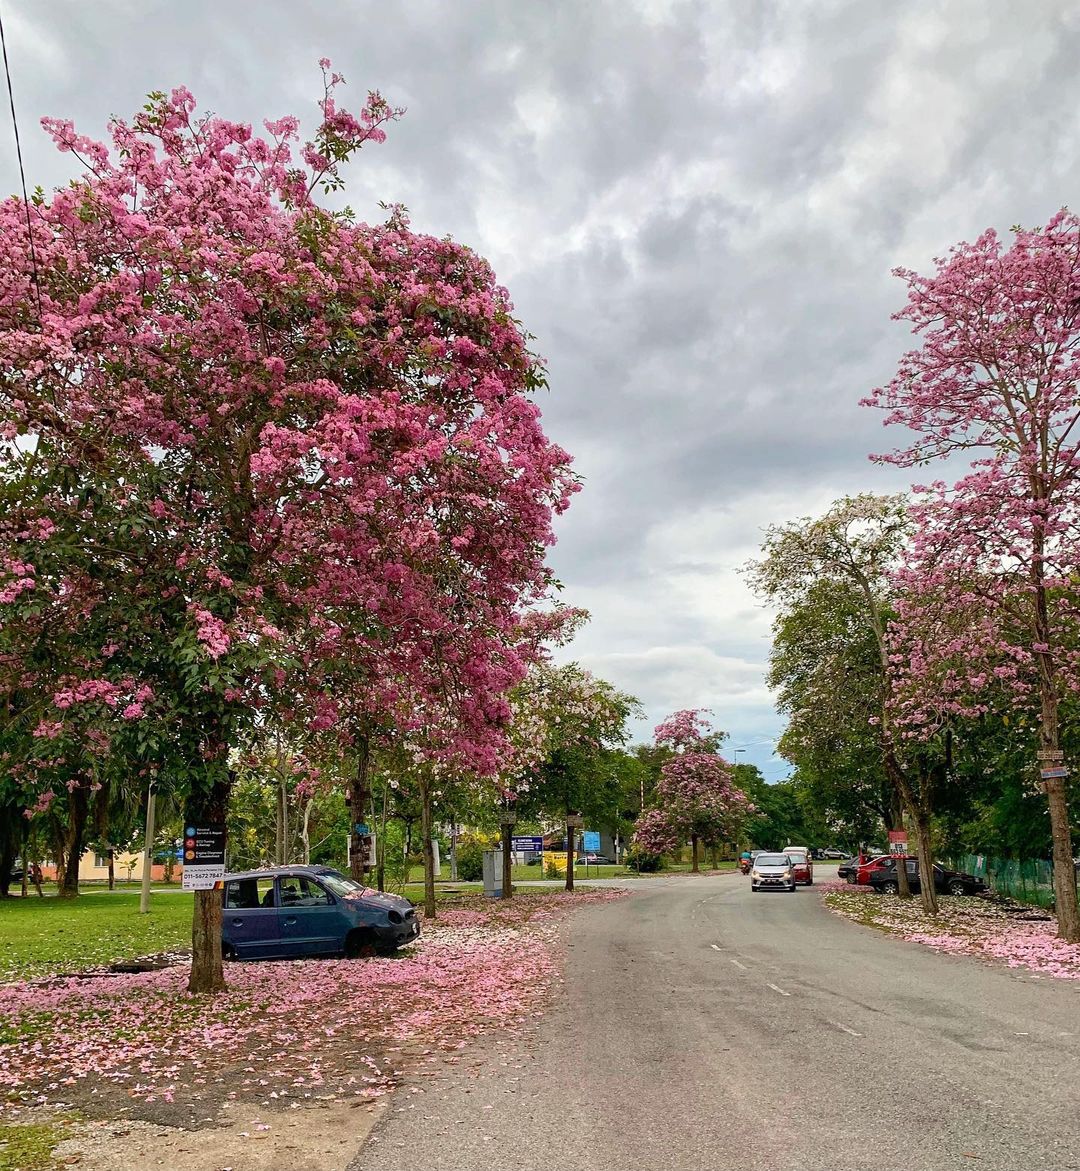 Tecome trees in full bloom in Malaysia - Cyberjaya